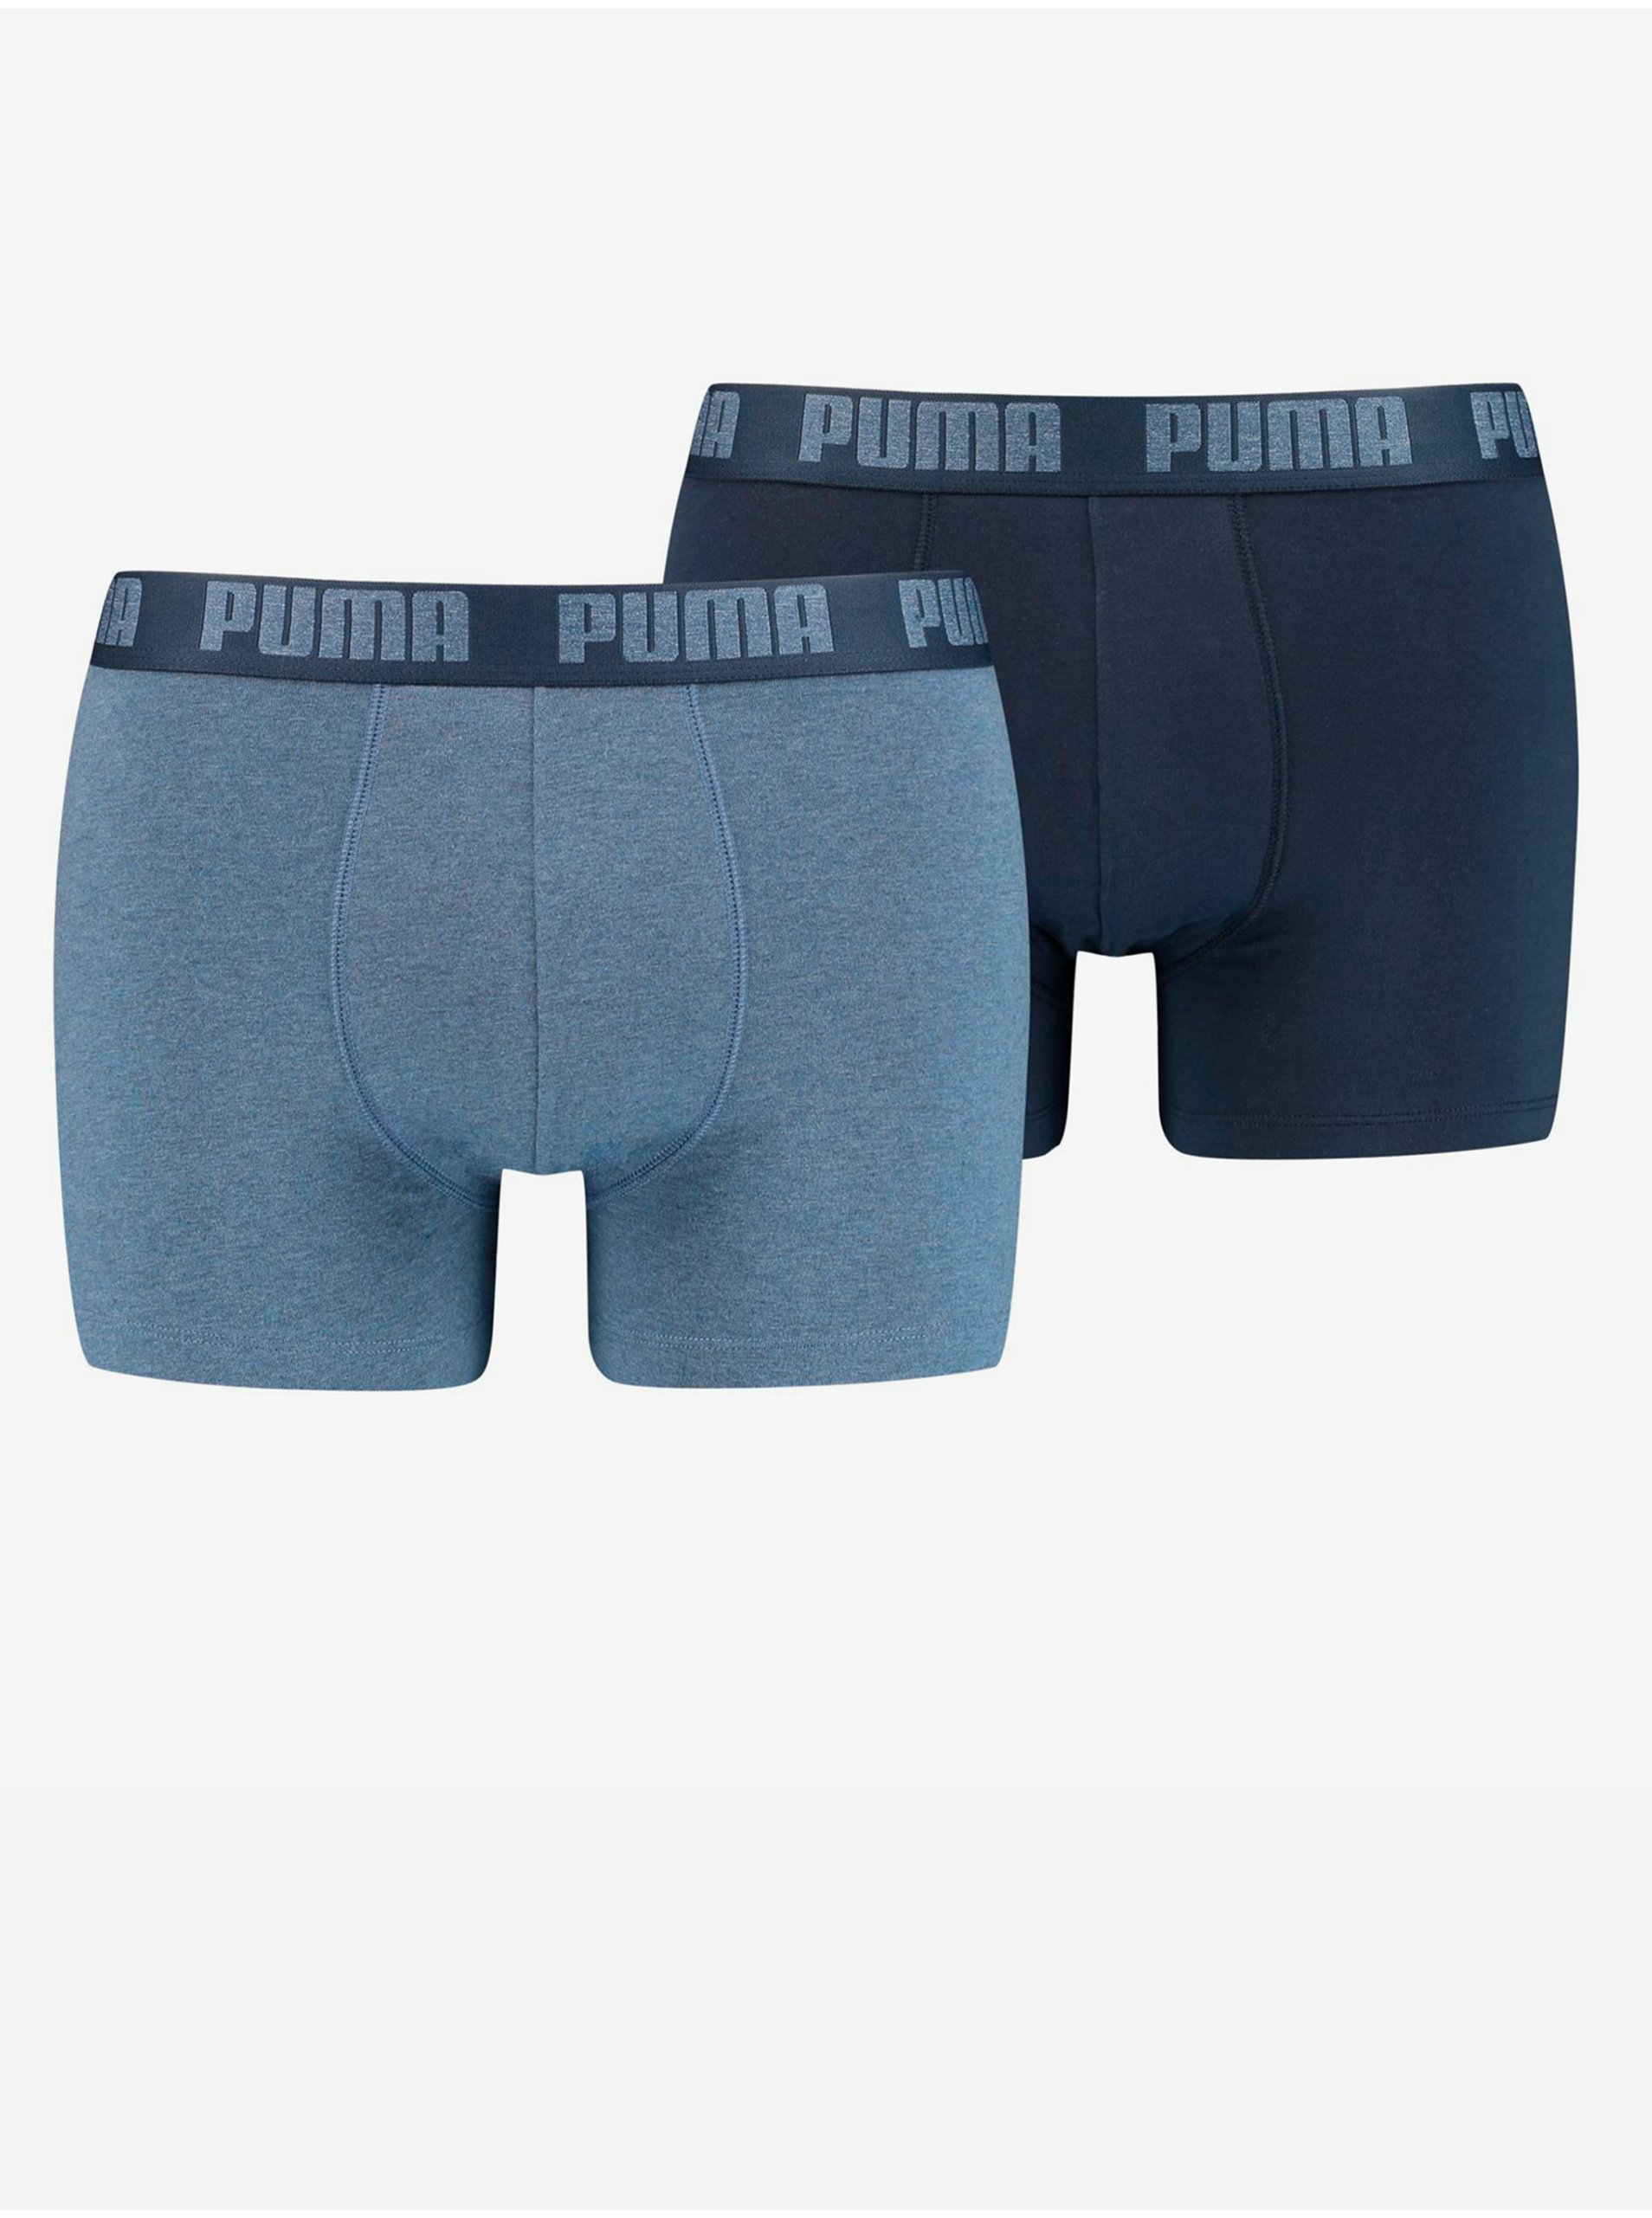 E-shop Sada dvou pánských boxerek v modré barvě Puma